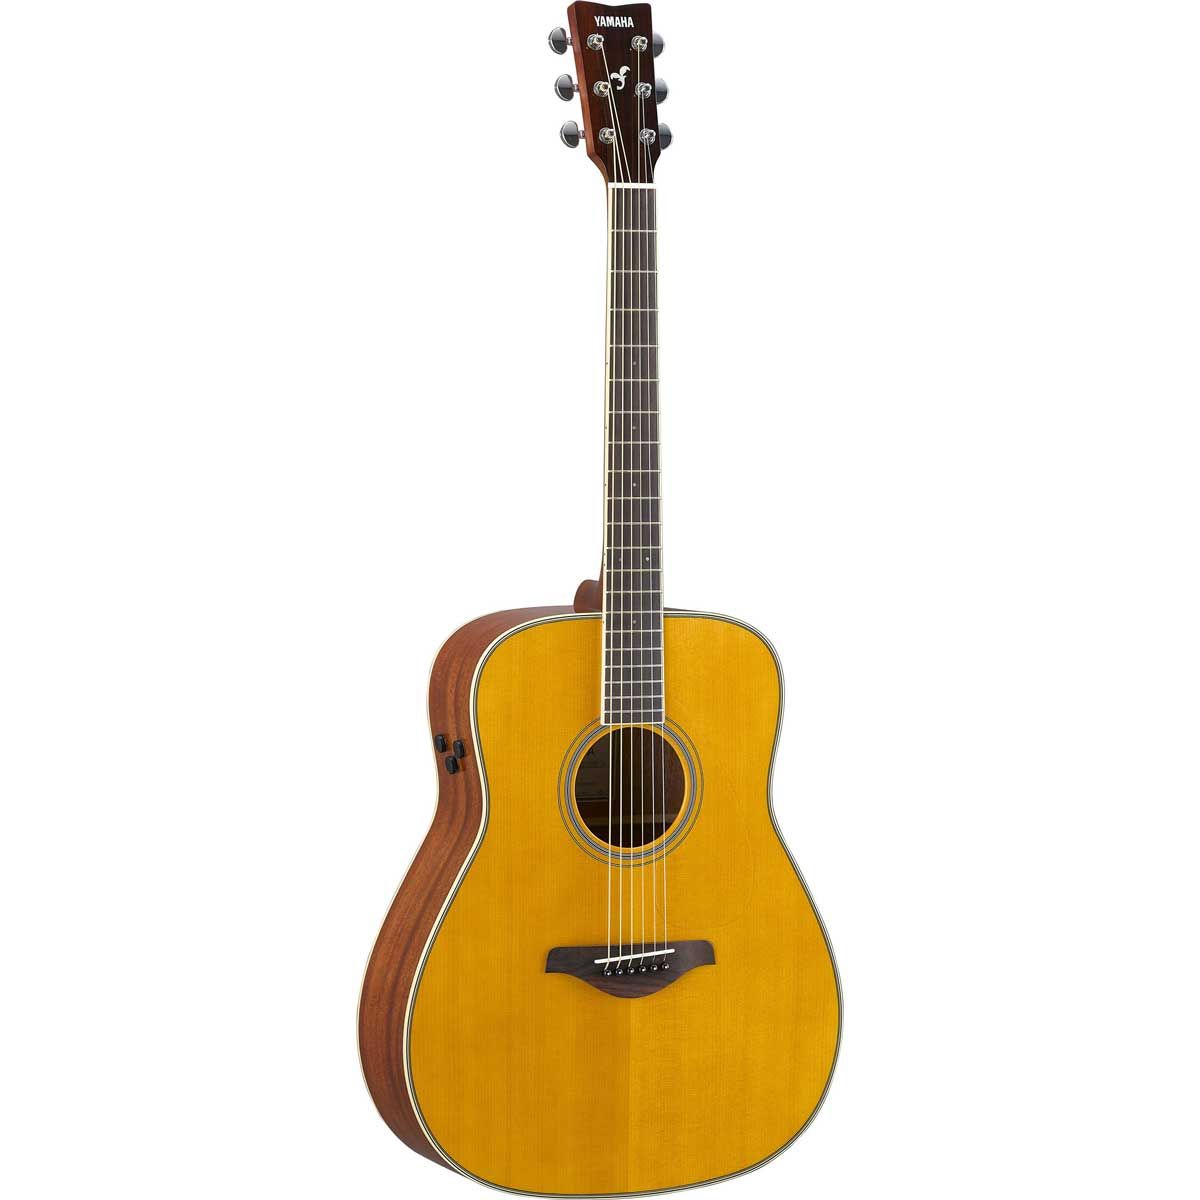 Yamaha FG-TA TransAcoustic Vintage Folk Western Guitar